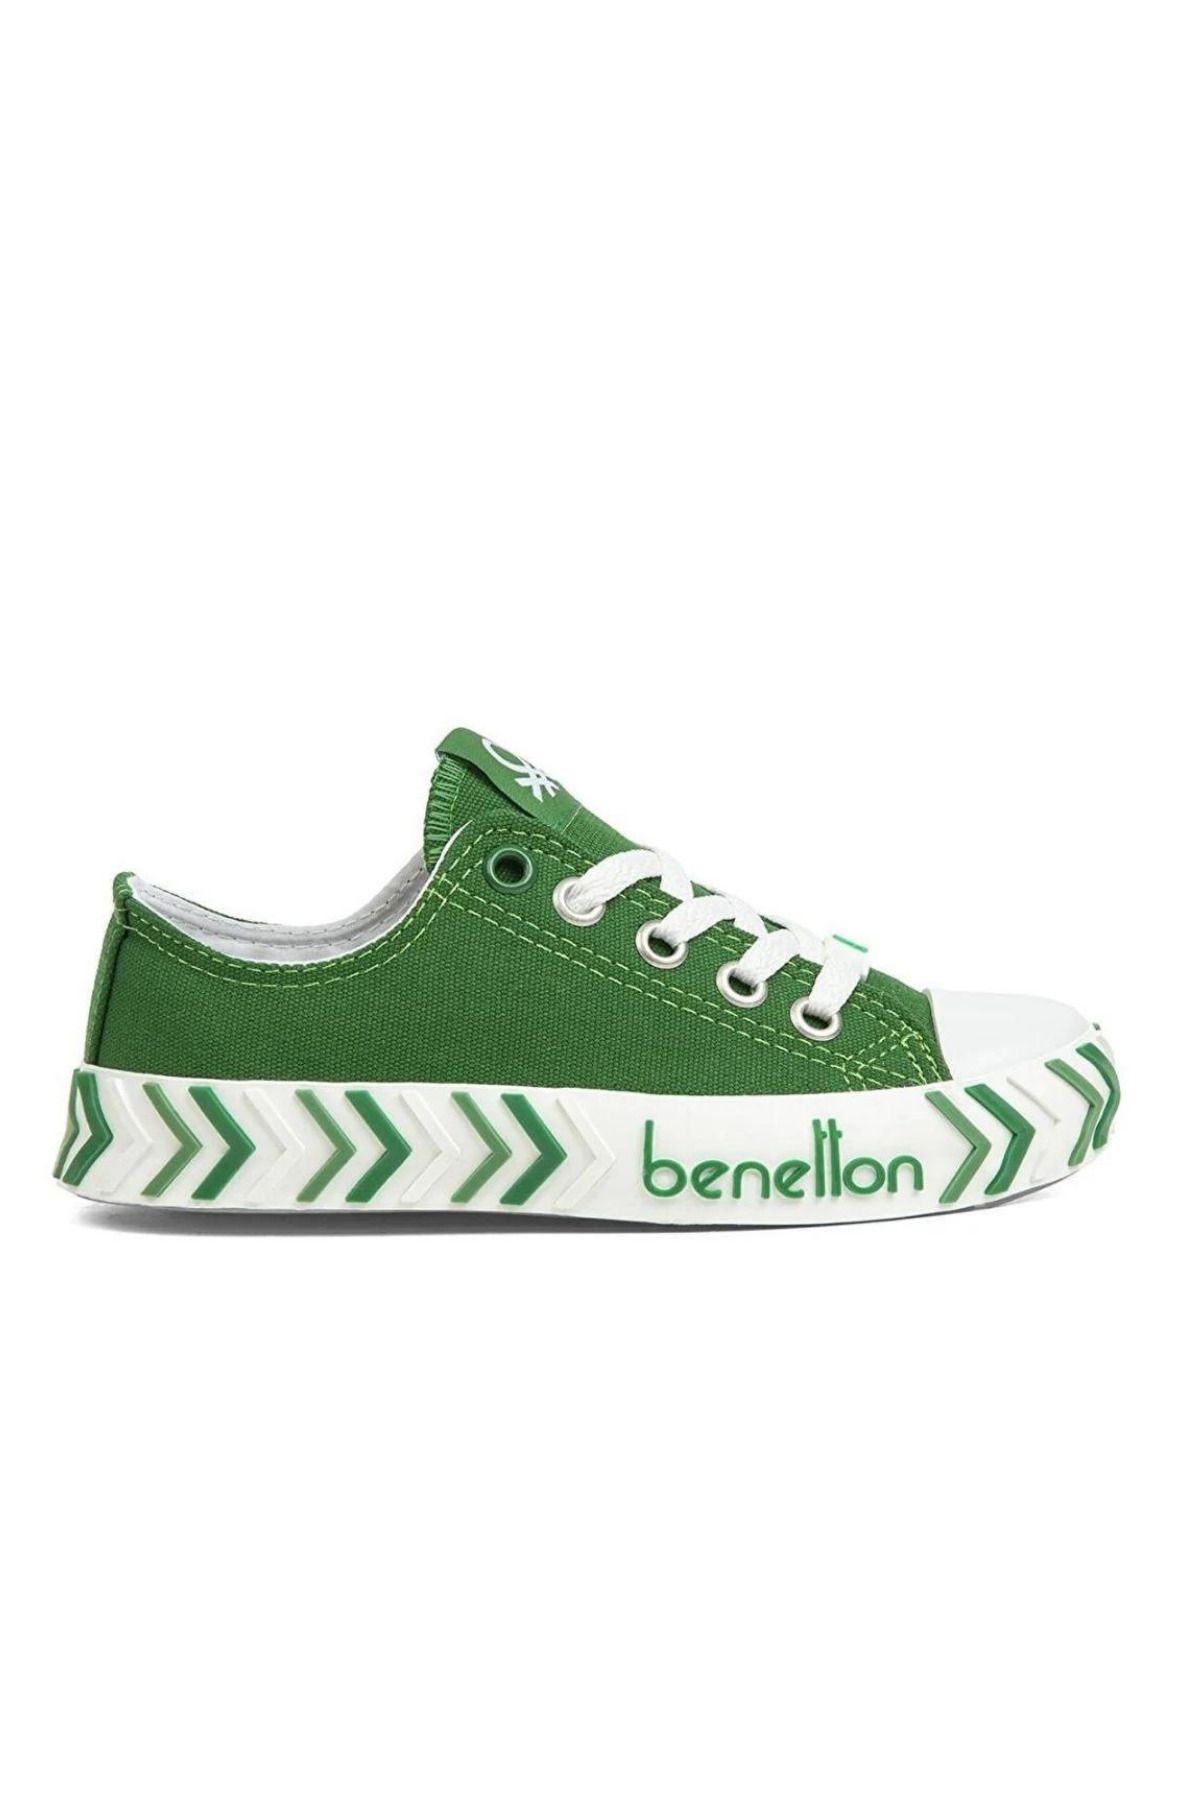 Benetton Yeşil - Çocuk Ayakkabı Bn-30635